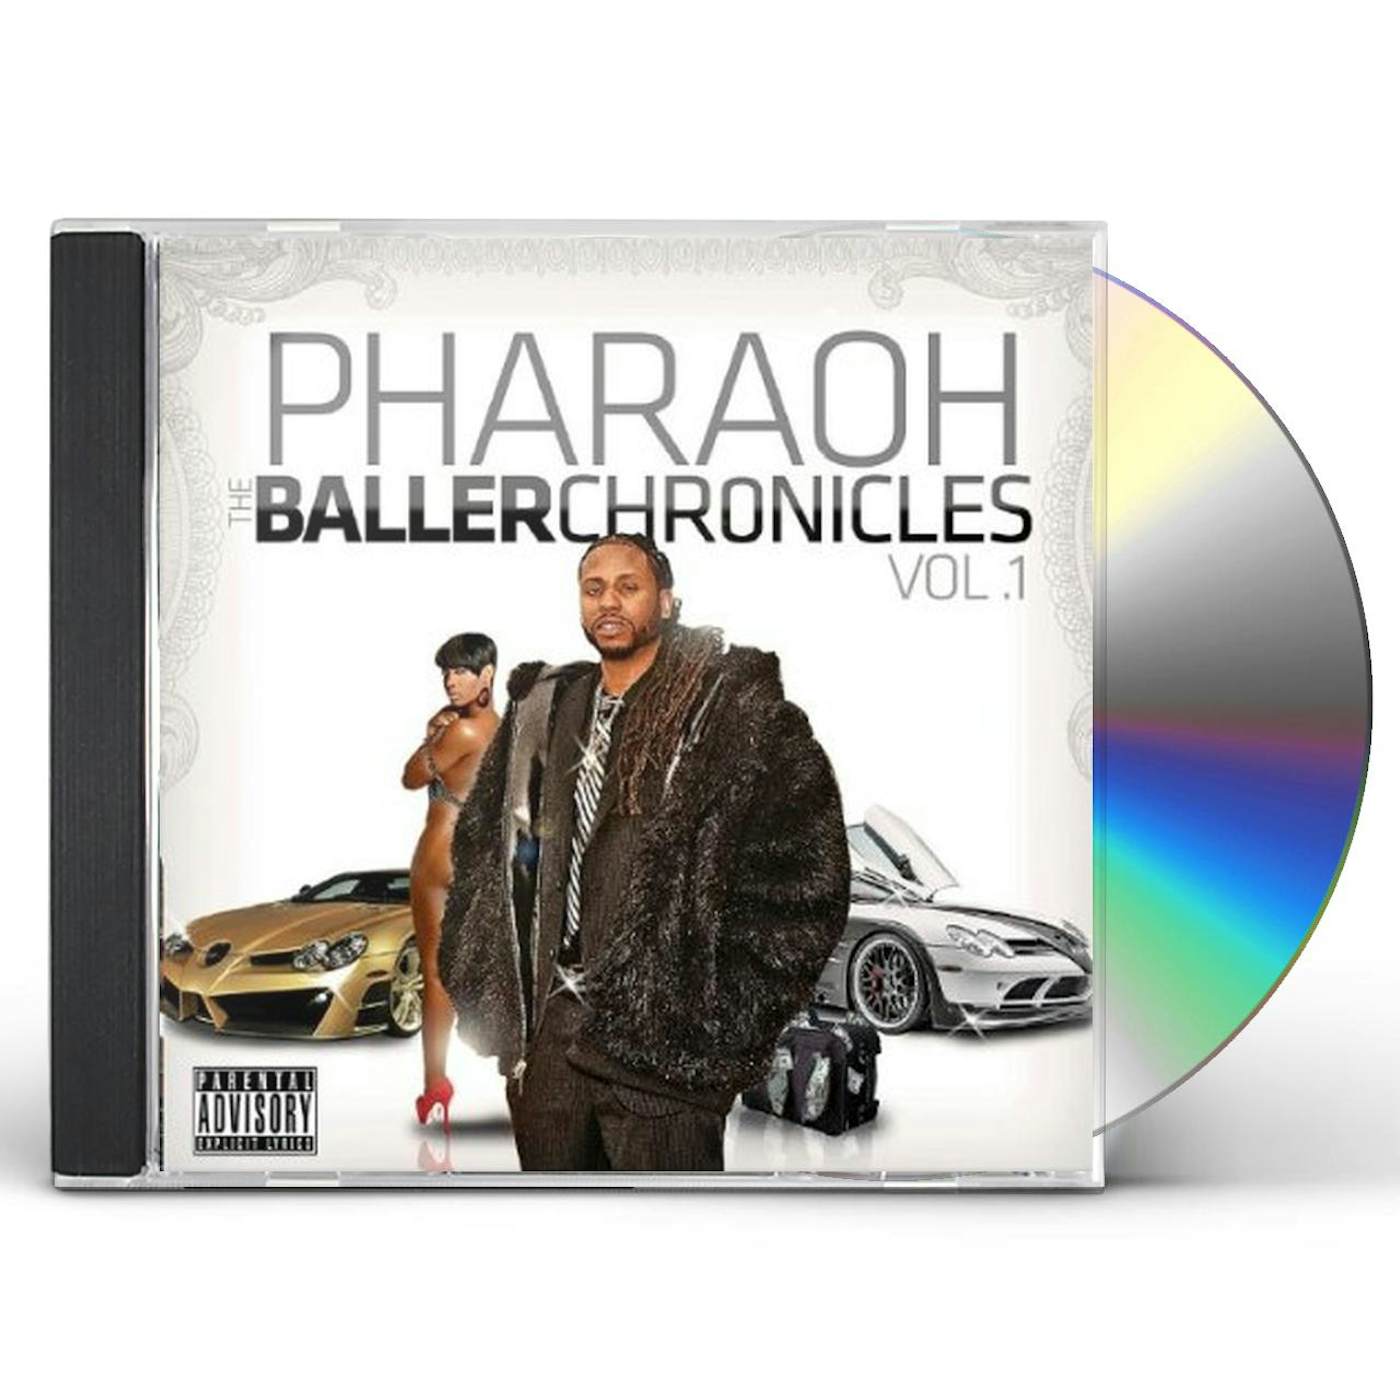 Pharaoh BALLER CHRONICLES 1 CD